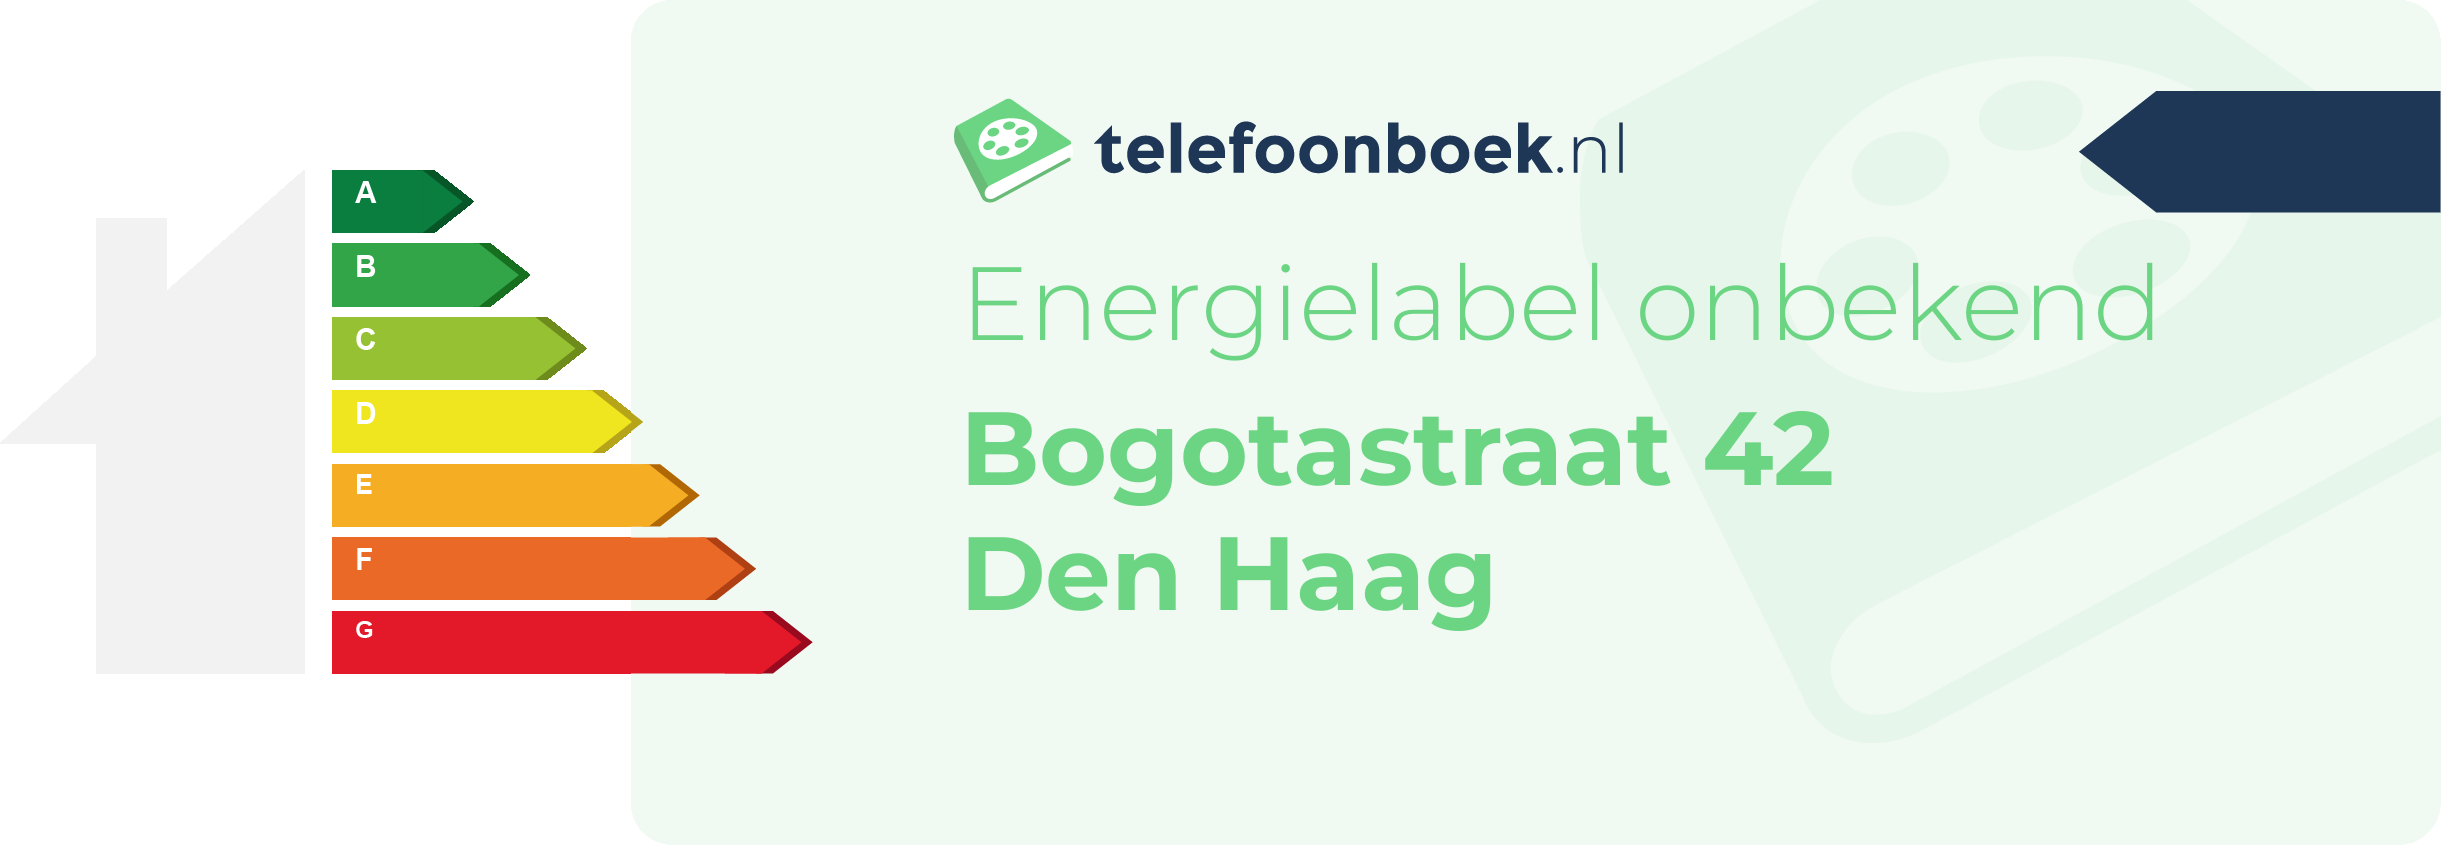 Energielabel Bogotastraat 42 Den Haag